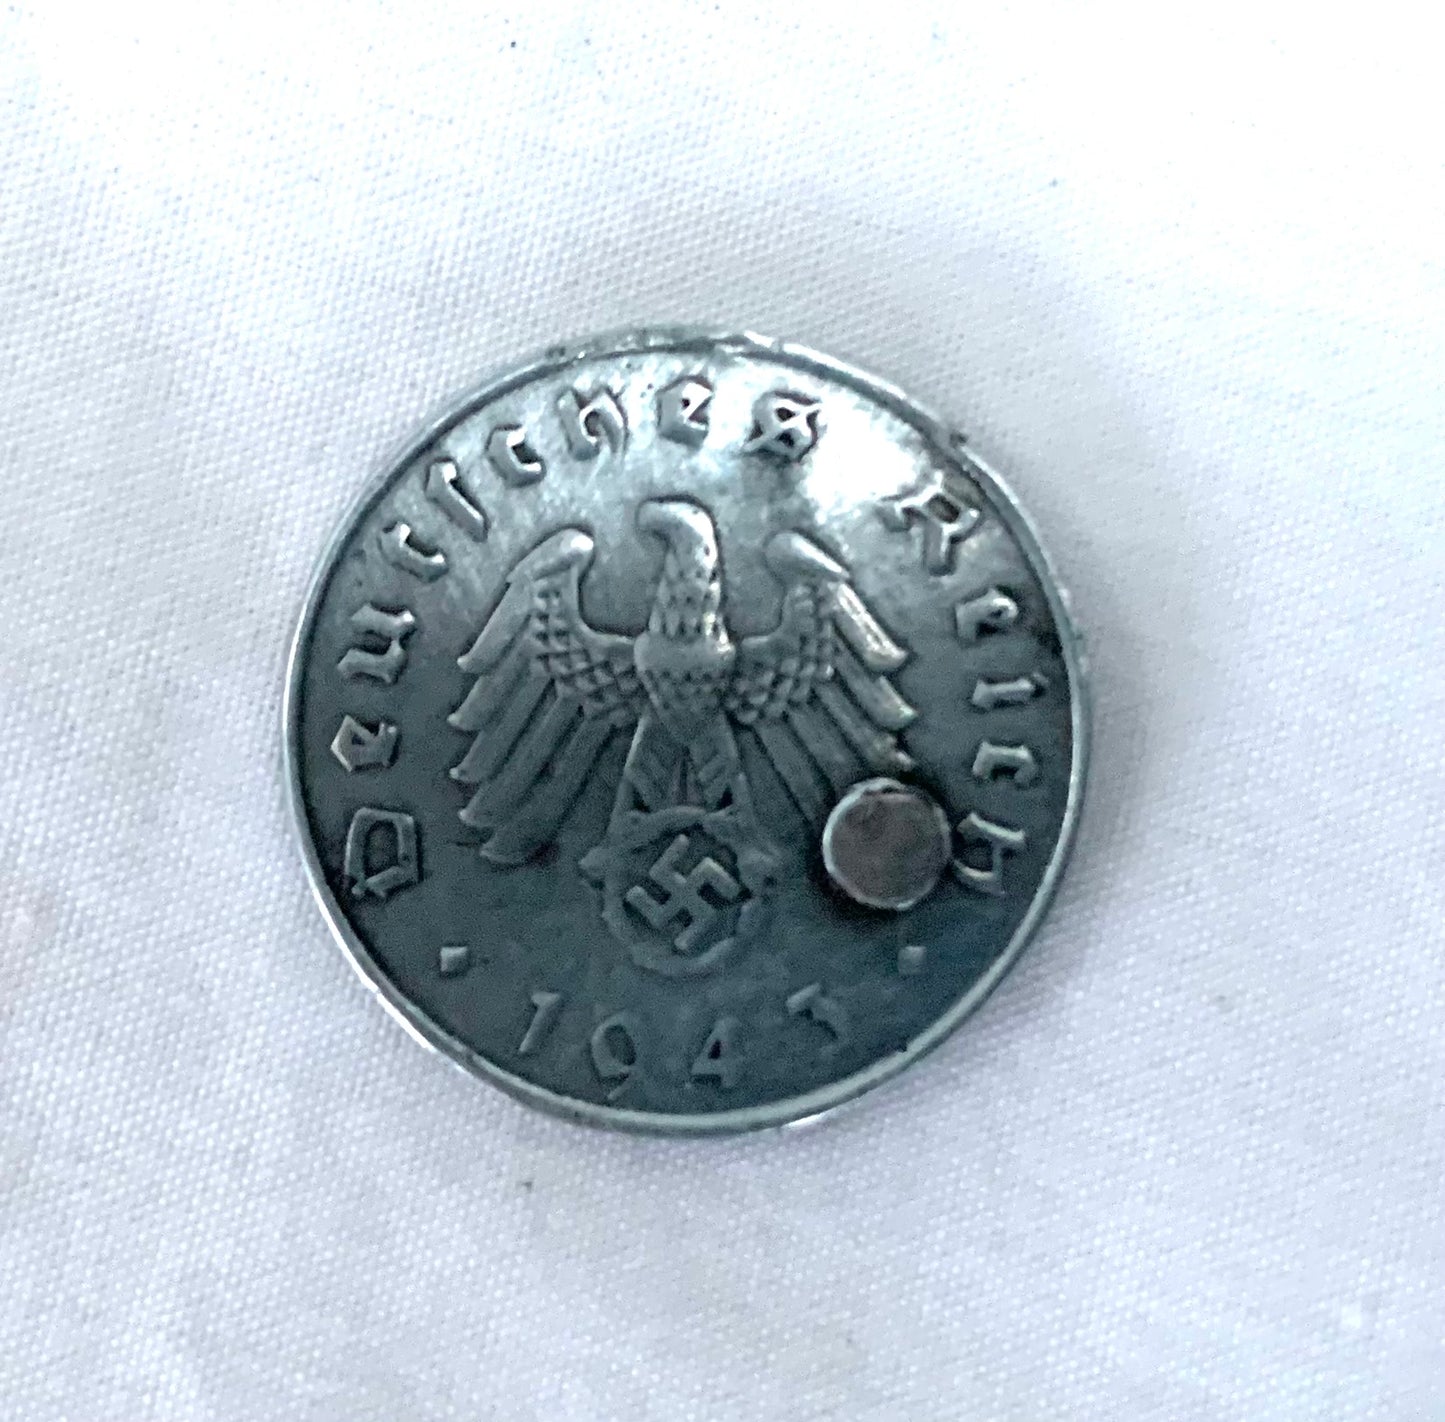 WW2 SOE German 10 Reichspfennig Coin with Concealed Blade.